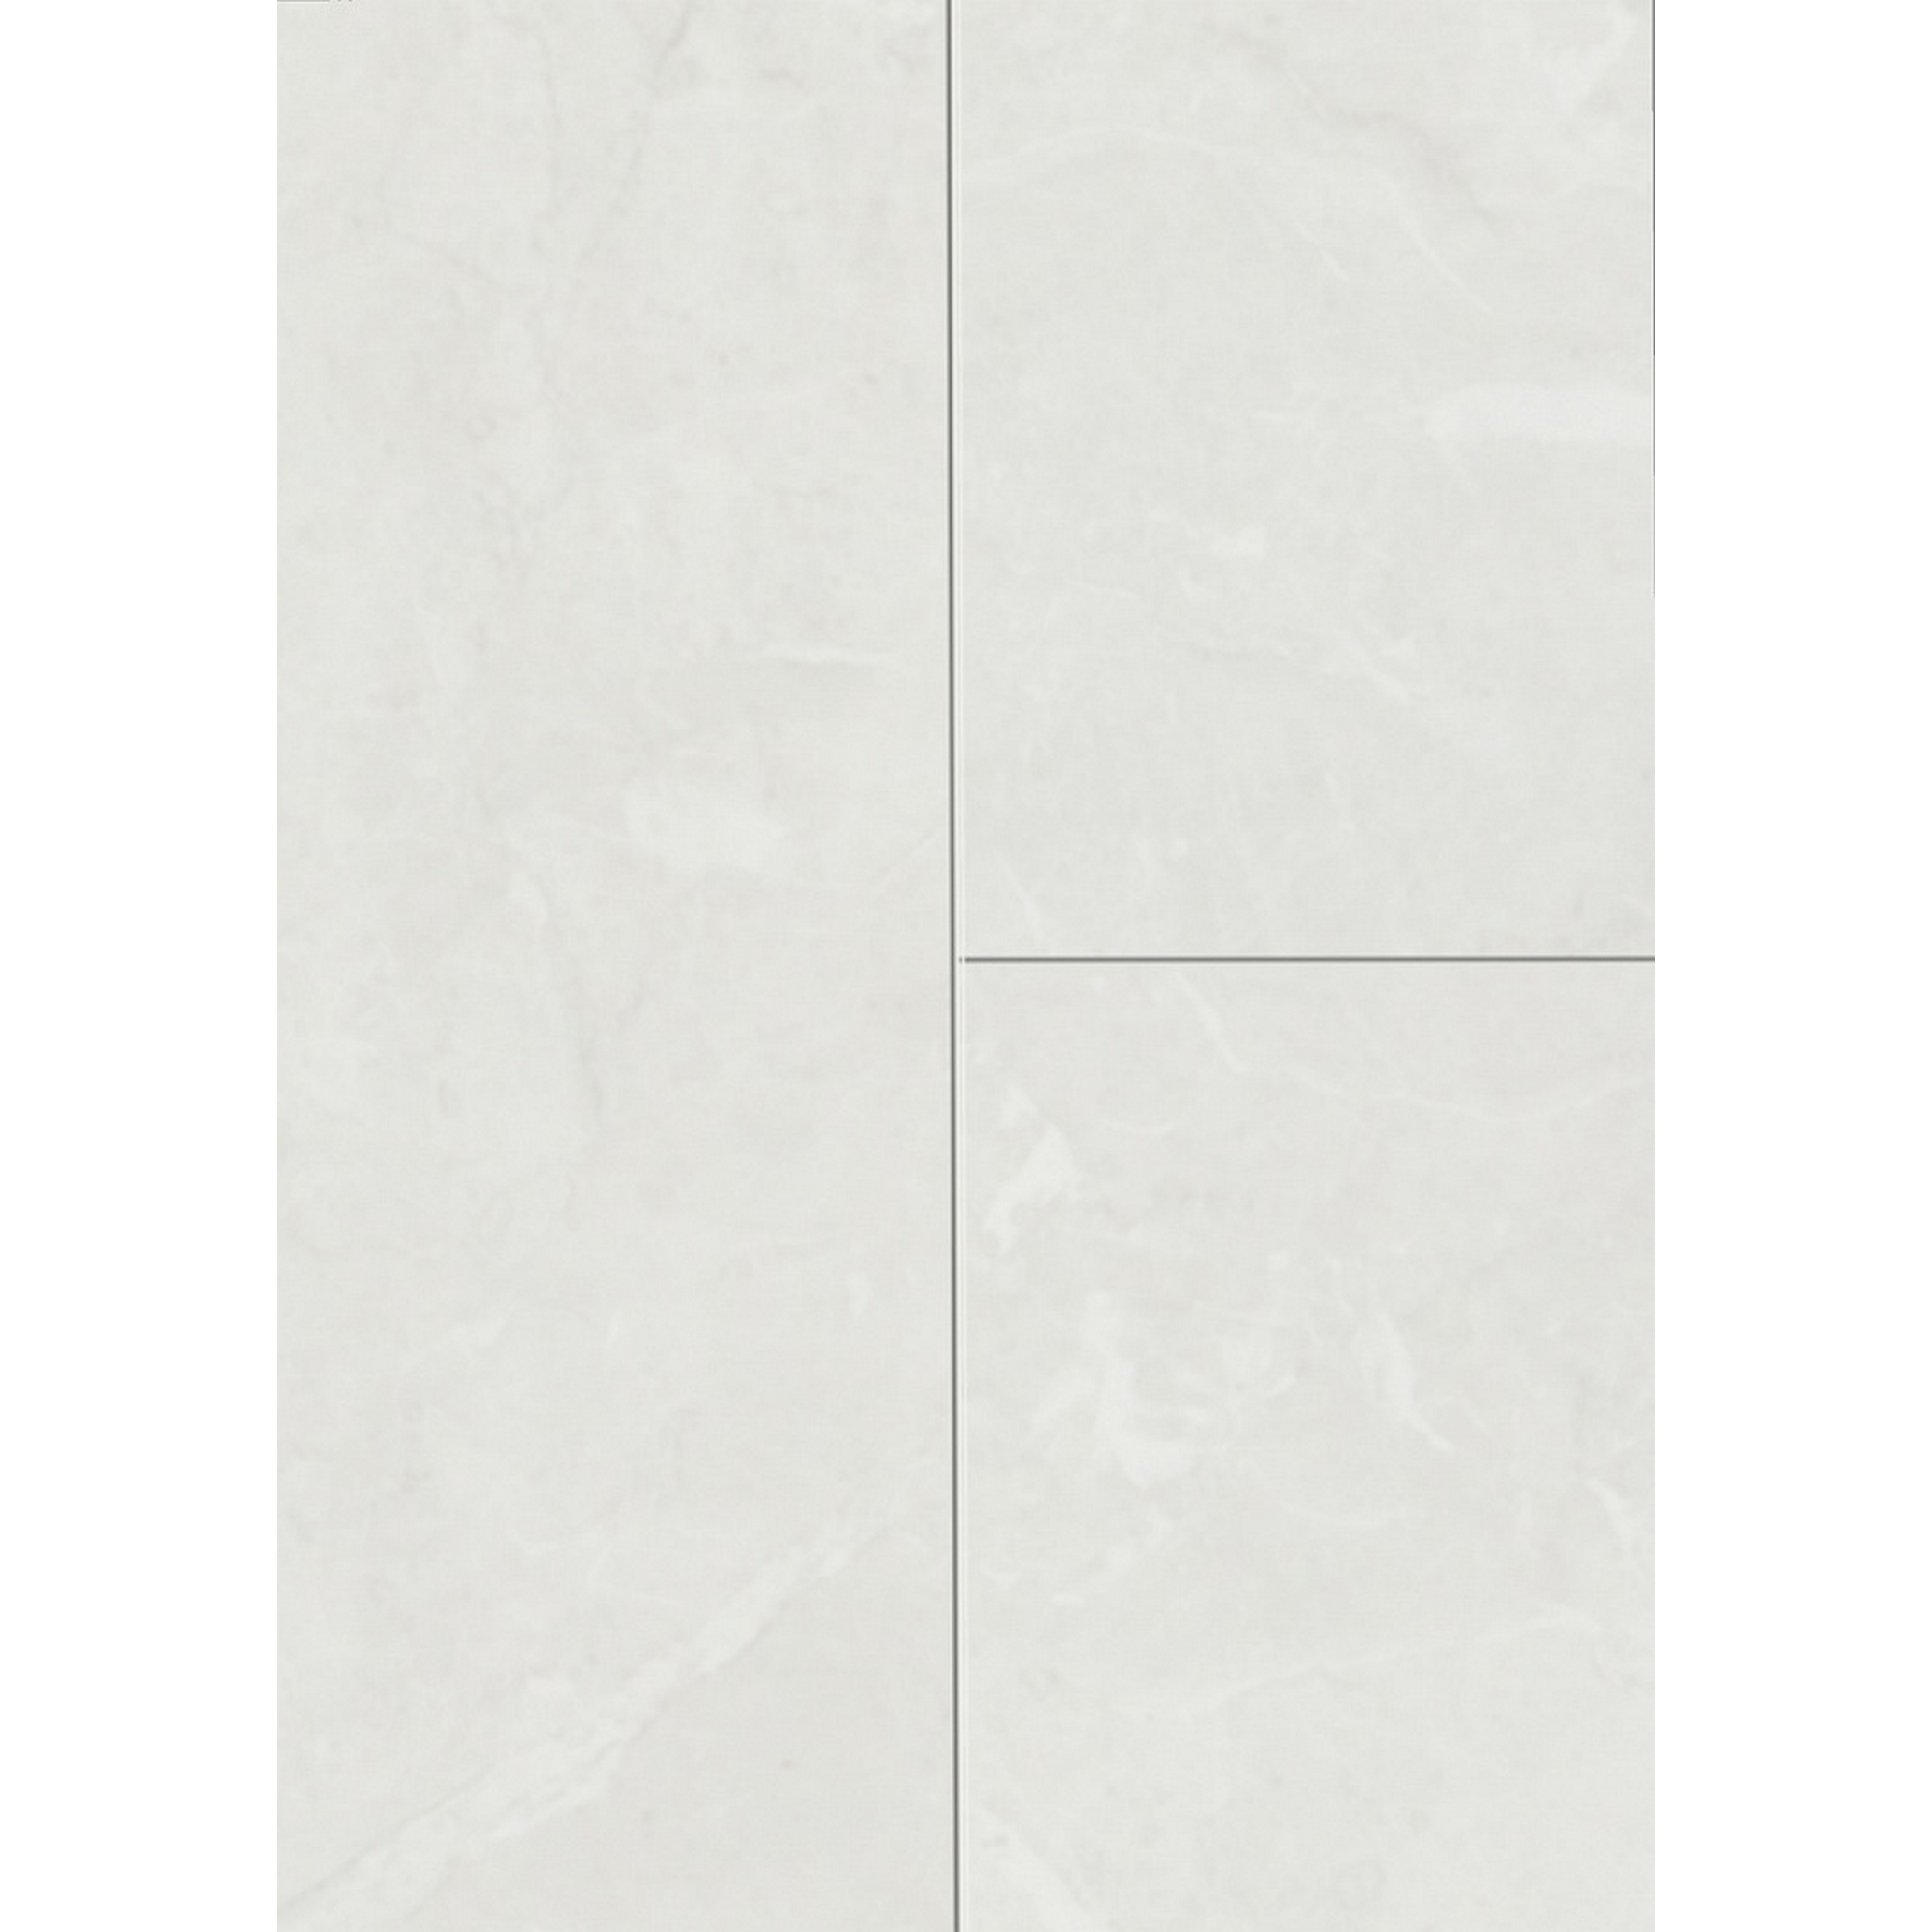 Laminat 'Visiogrande Autentico' Granit weiß 8 mm + product picture